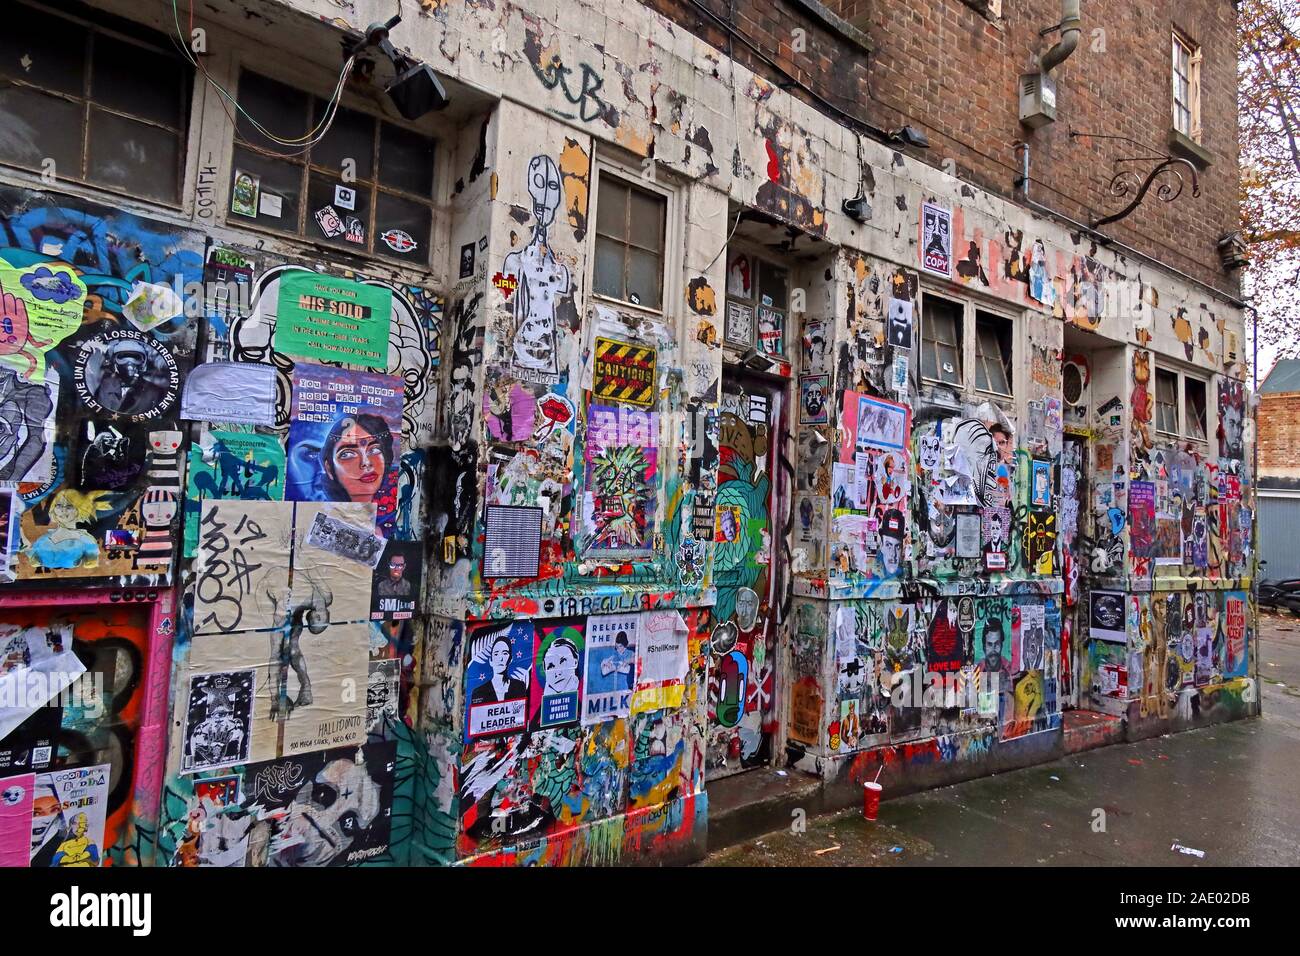 Graffiti e poster, stencil art, Off Brick Lane, East End, Londra, Inghilterra, Regno Unito, E1 6QL Foto Stock